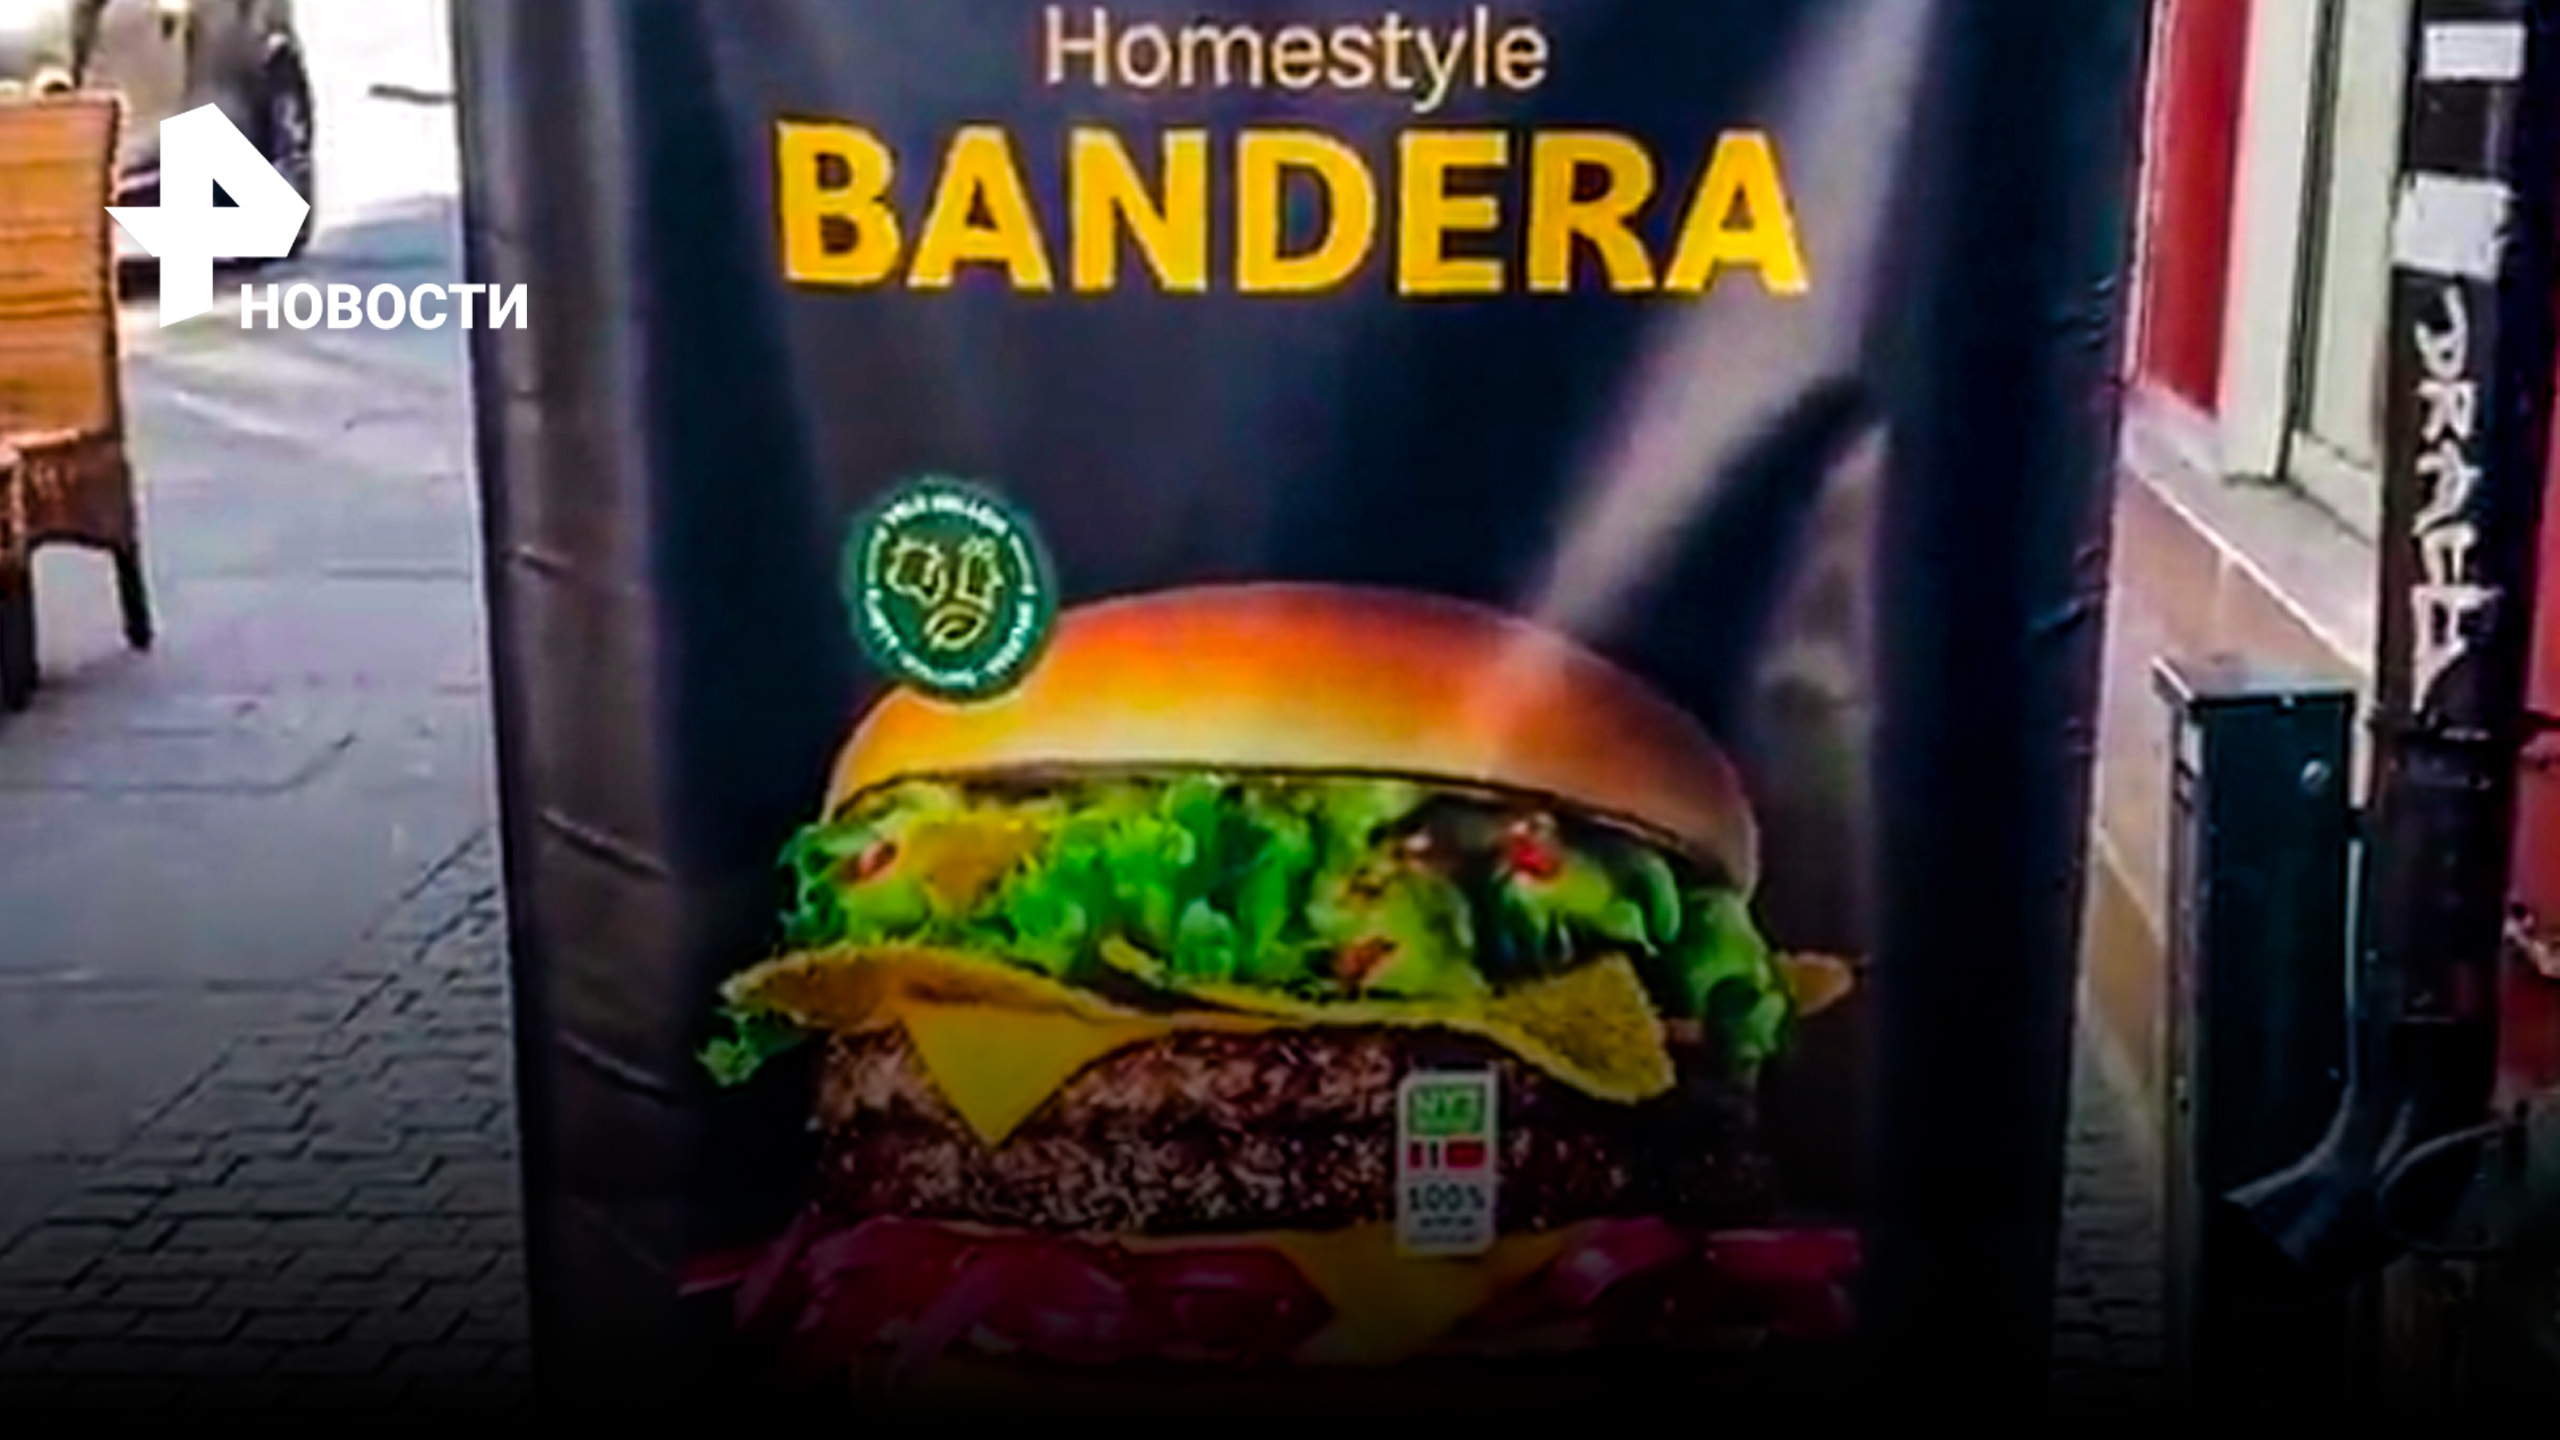 Бандера-бургер в Макдональдсе в Осло, Норвегия шокировал сеть / РЕН Новости